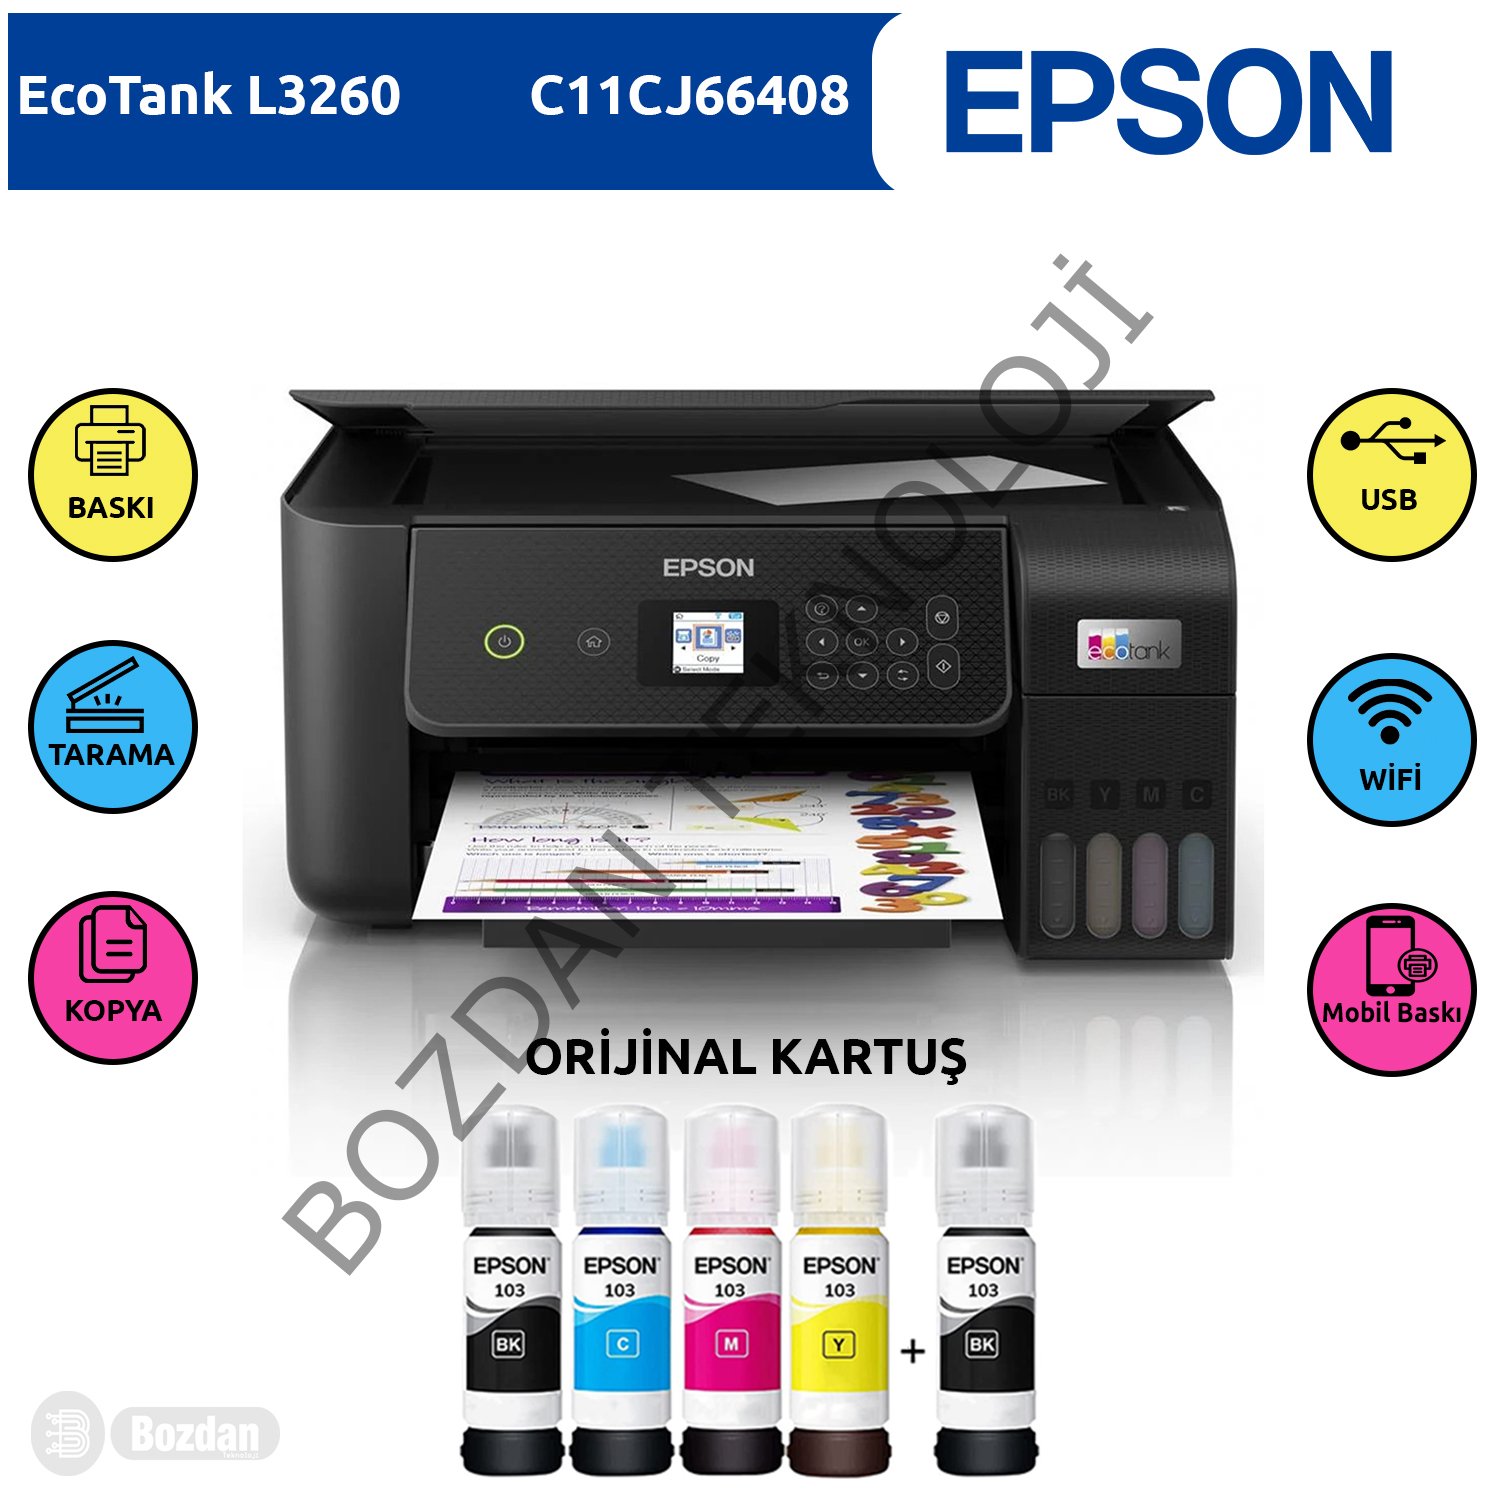 Epson Ecotank L3260 Renkli Tanklı Yazıcı Baskı-Tarama- Kopya - ( Usb, Wifi, Wi-Fi Direct ) + ORİJİNAL EPSON 4 x 65 ml + 1 Mürekkep C11CJ66408